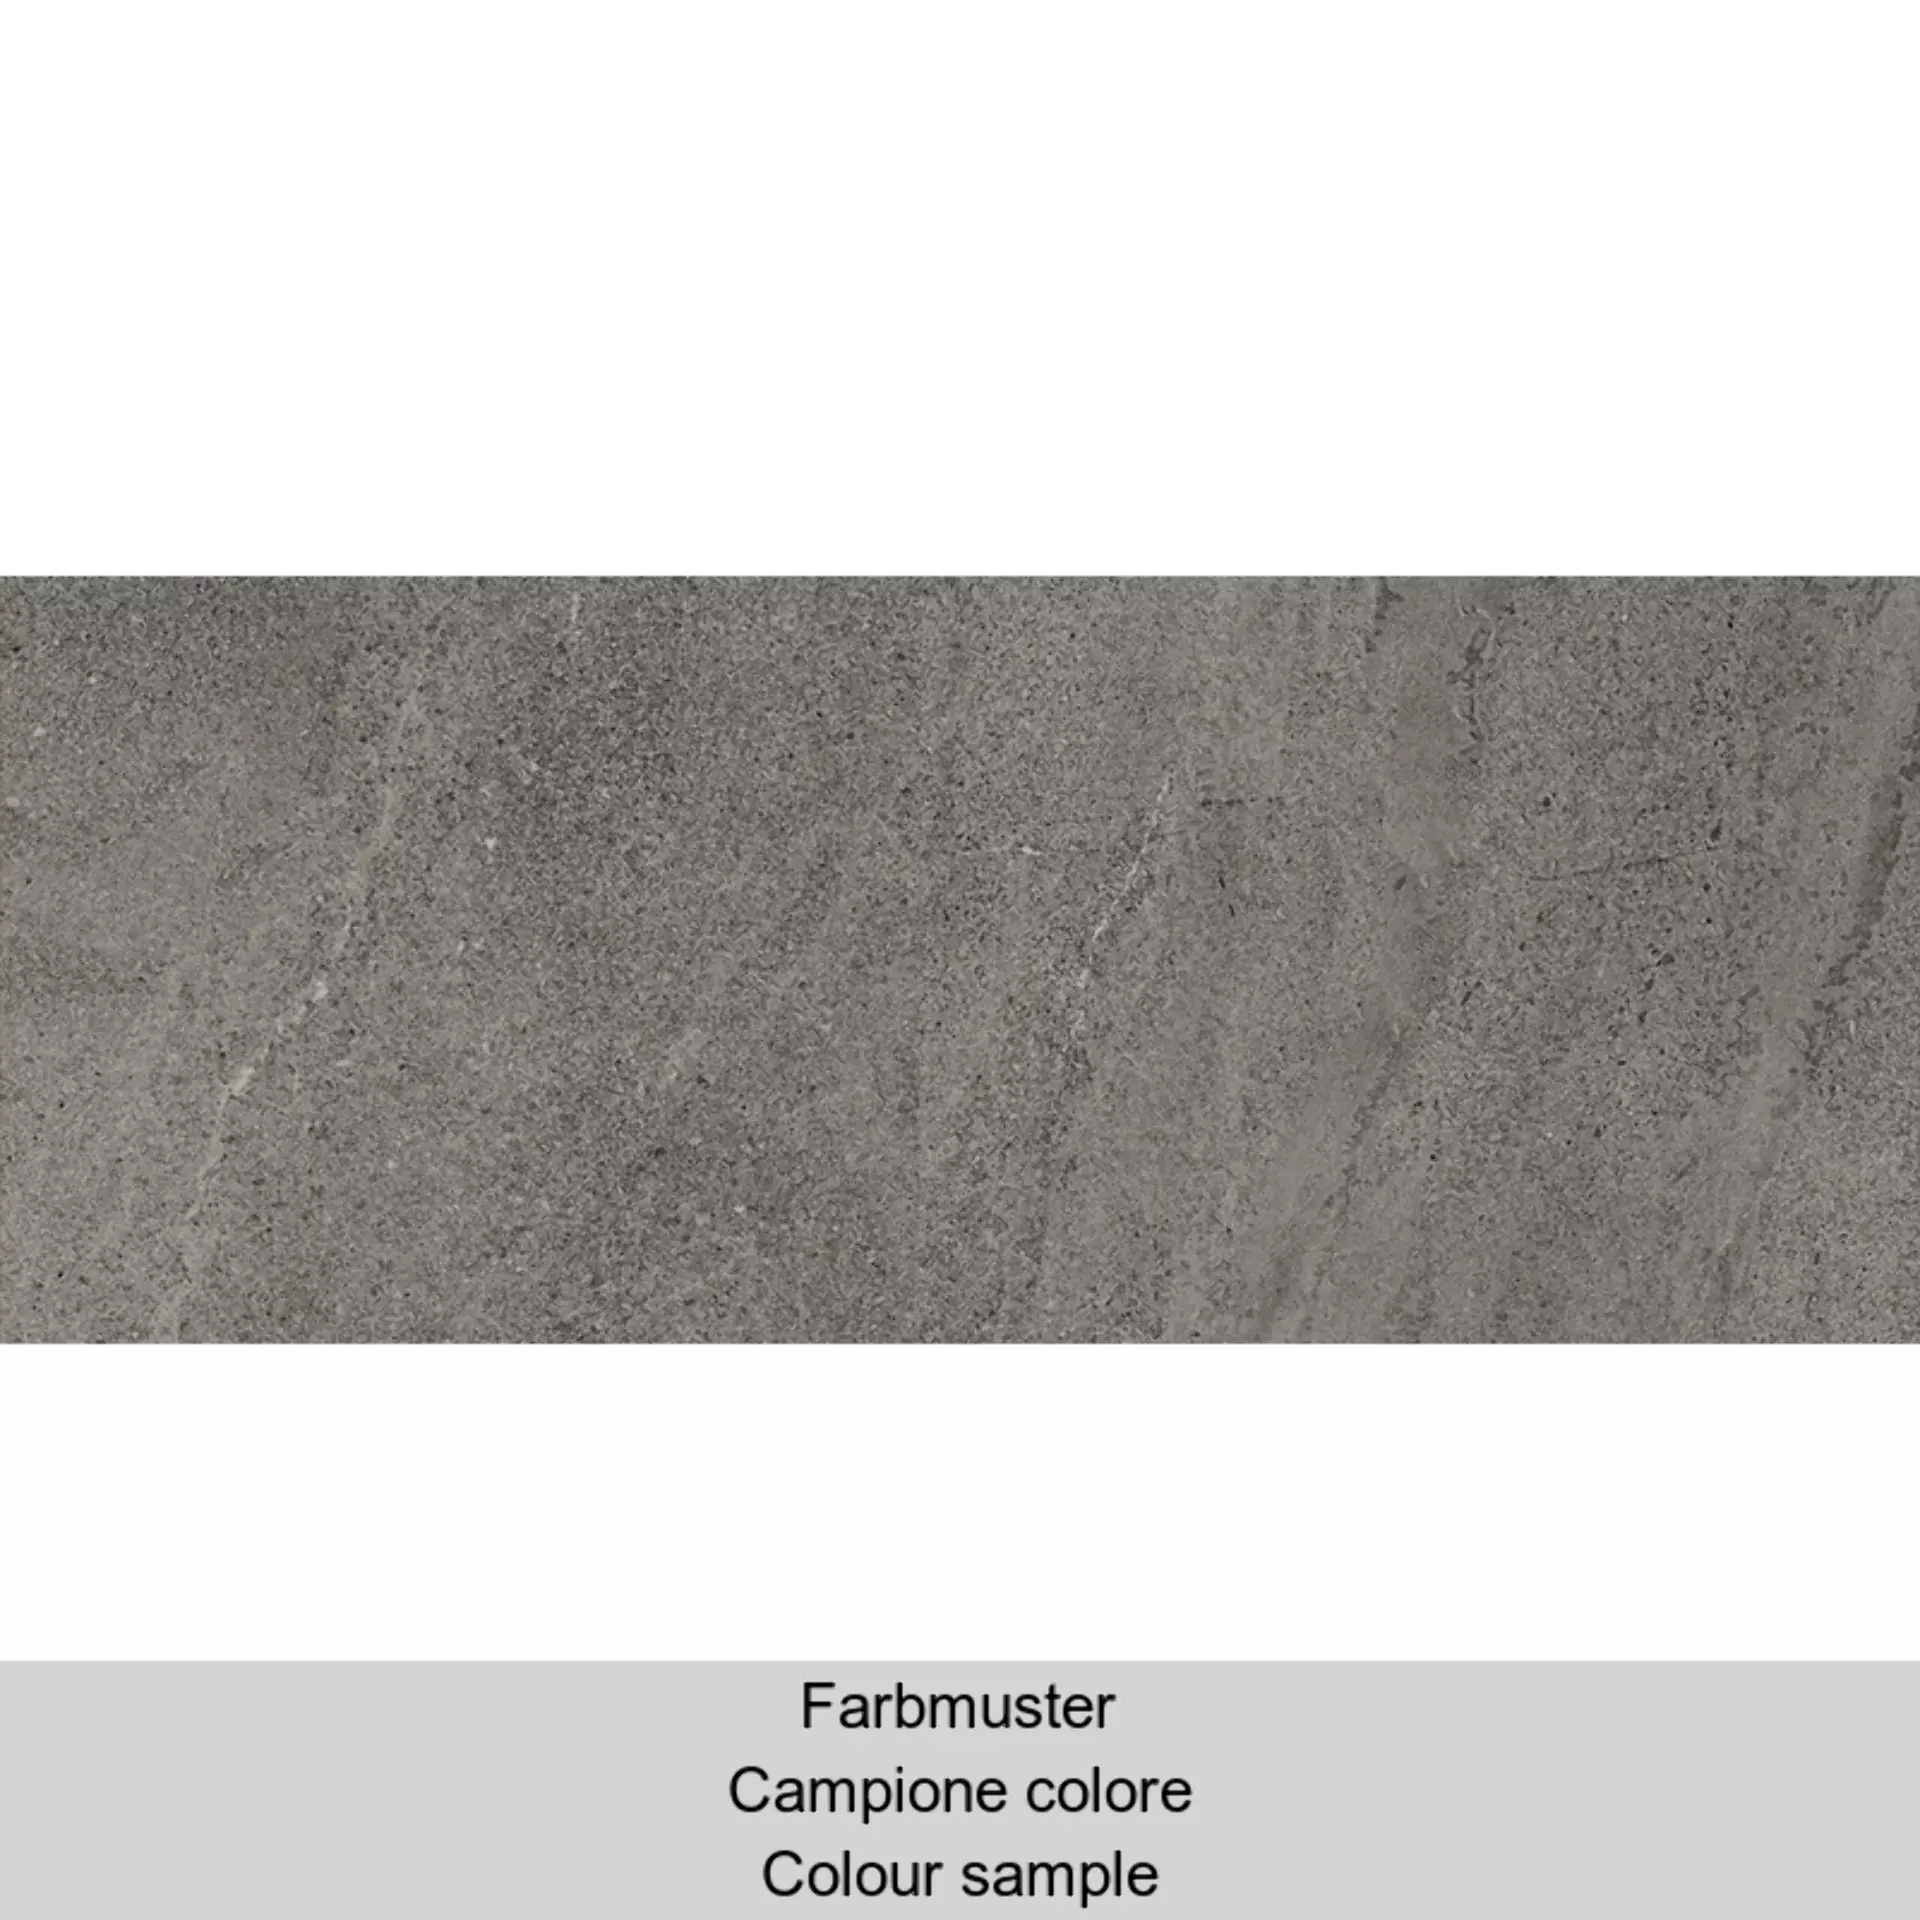 Cottodeste Kerlite Limestone Slate Naturale Protect Slate EK6LS30 antibakteriell natur 100x250cm rektifiziert 5,5mm